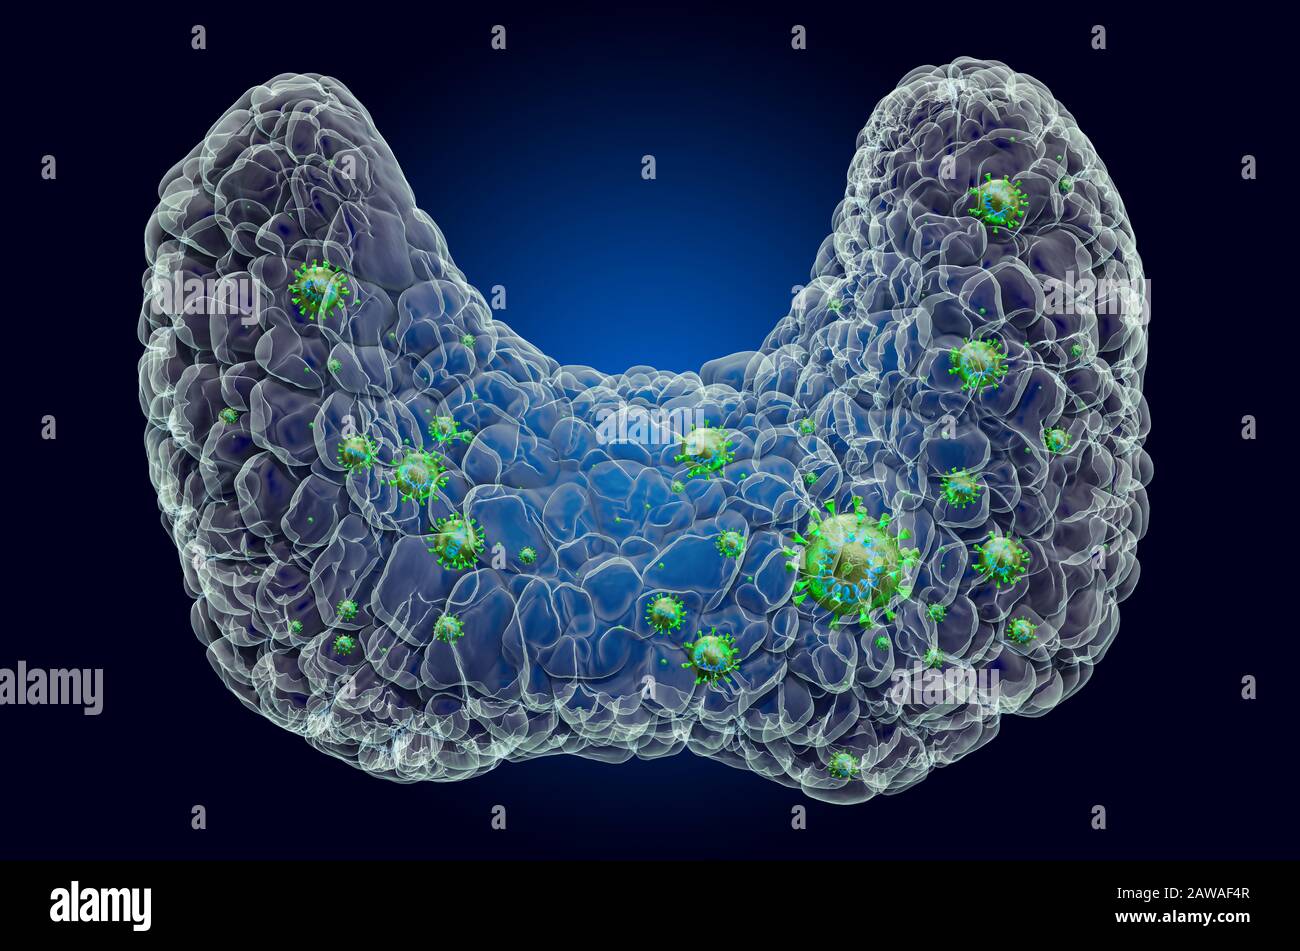 Glande thyroïde avec virus, effet de lumière fantôme, hologramme de rayons X. Rendu tridimensionnel sur fond bleu foncé Banque D'Images